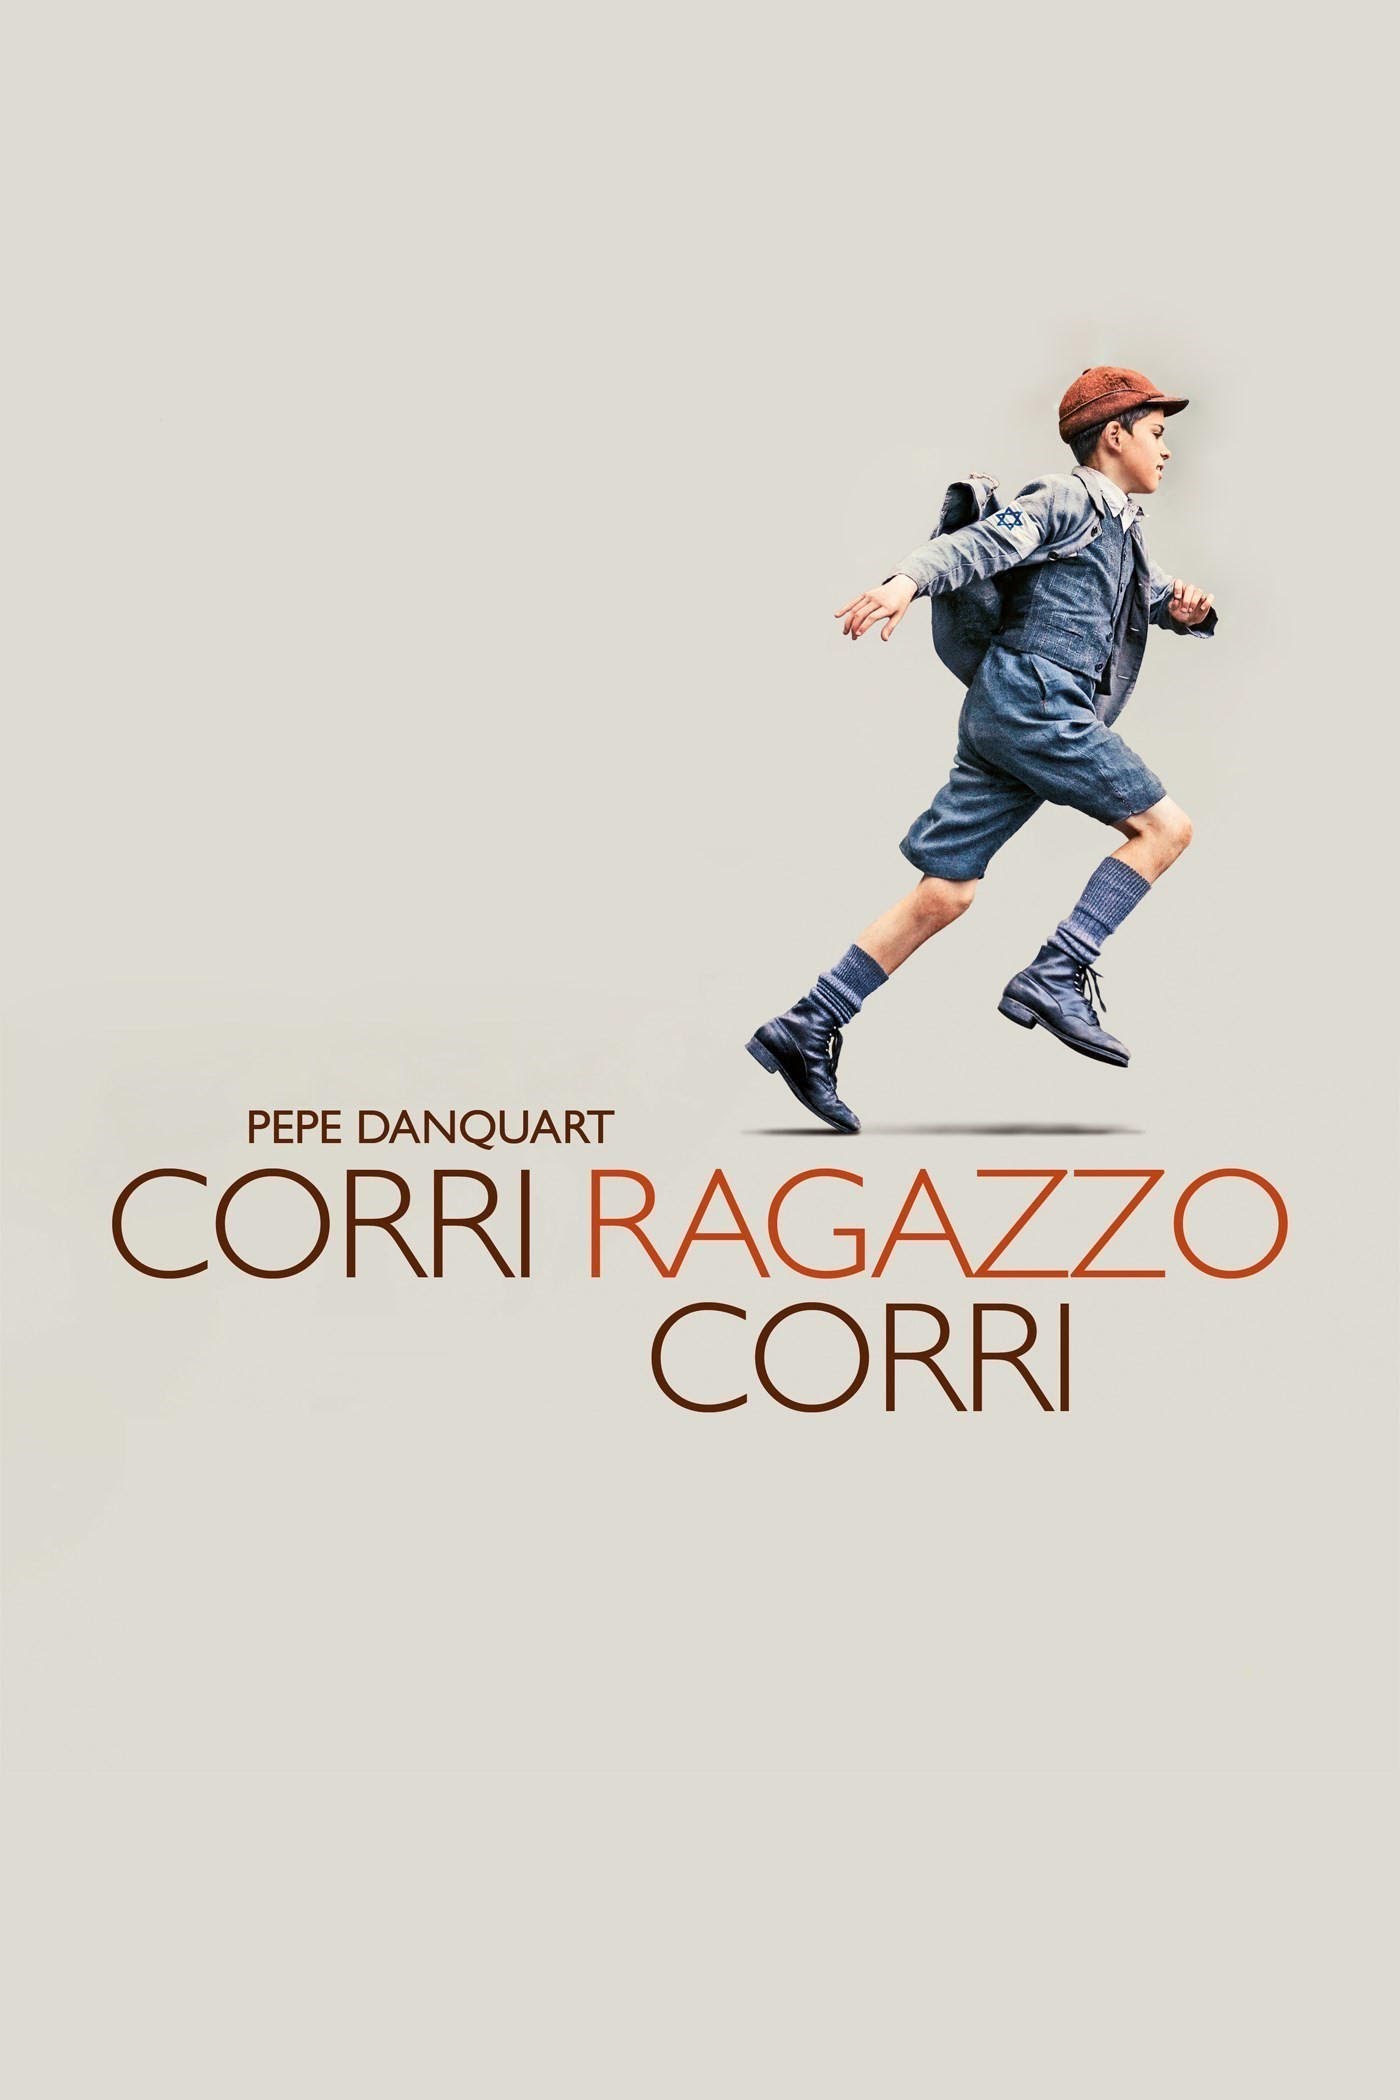 Corri ragazzo corri (2013)